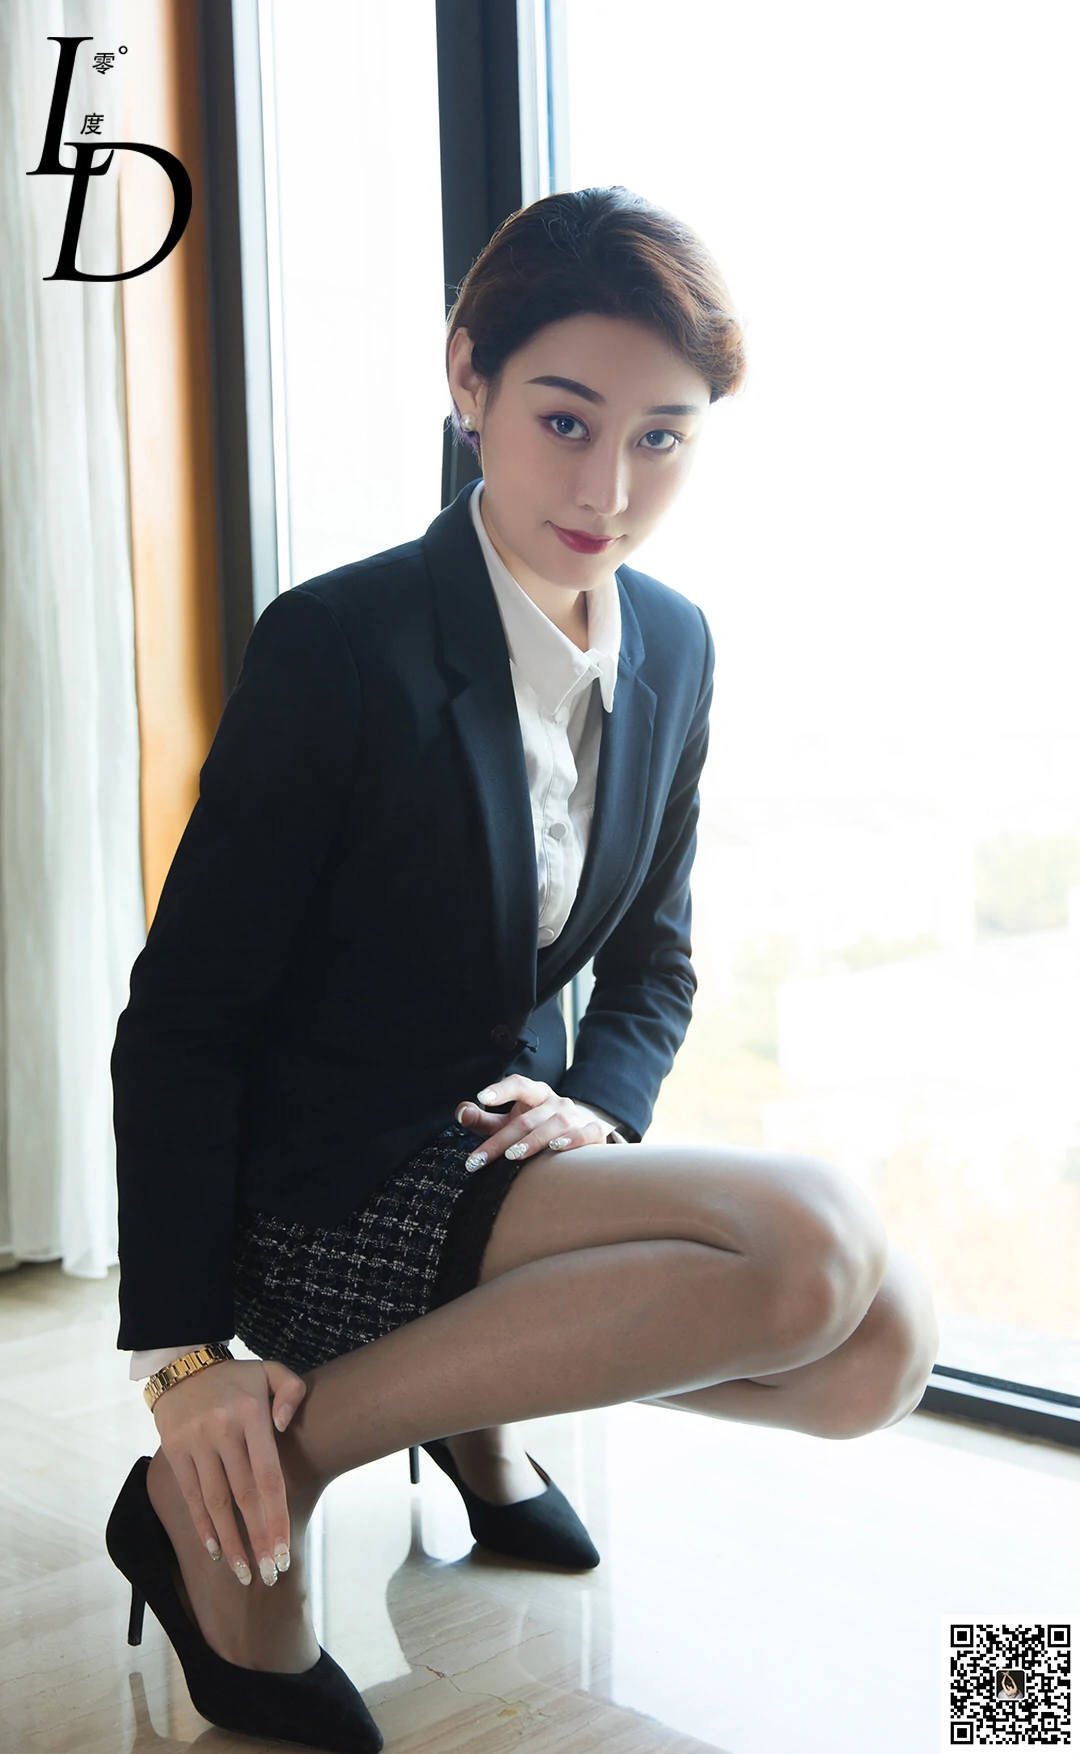 [LD零度摄影]NO.038 性感女秘书 模特依婷 黑色制服与短裙加黑丝美腿私房写真集,